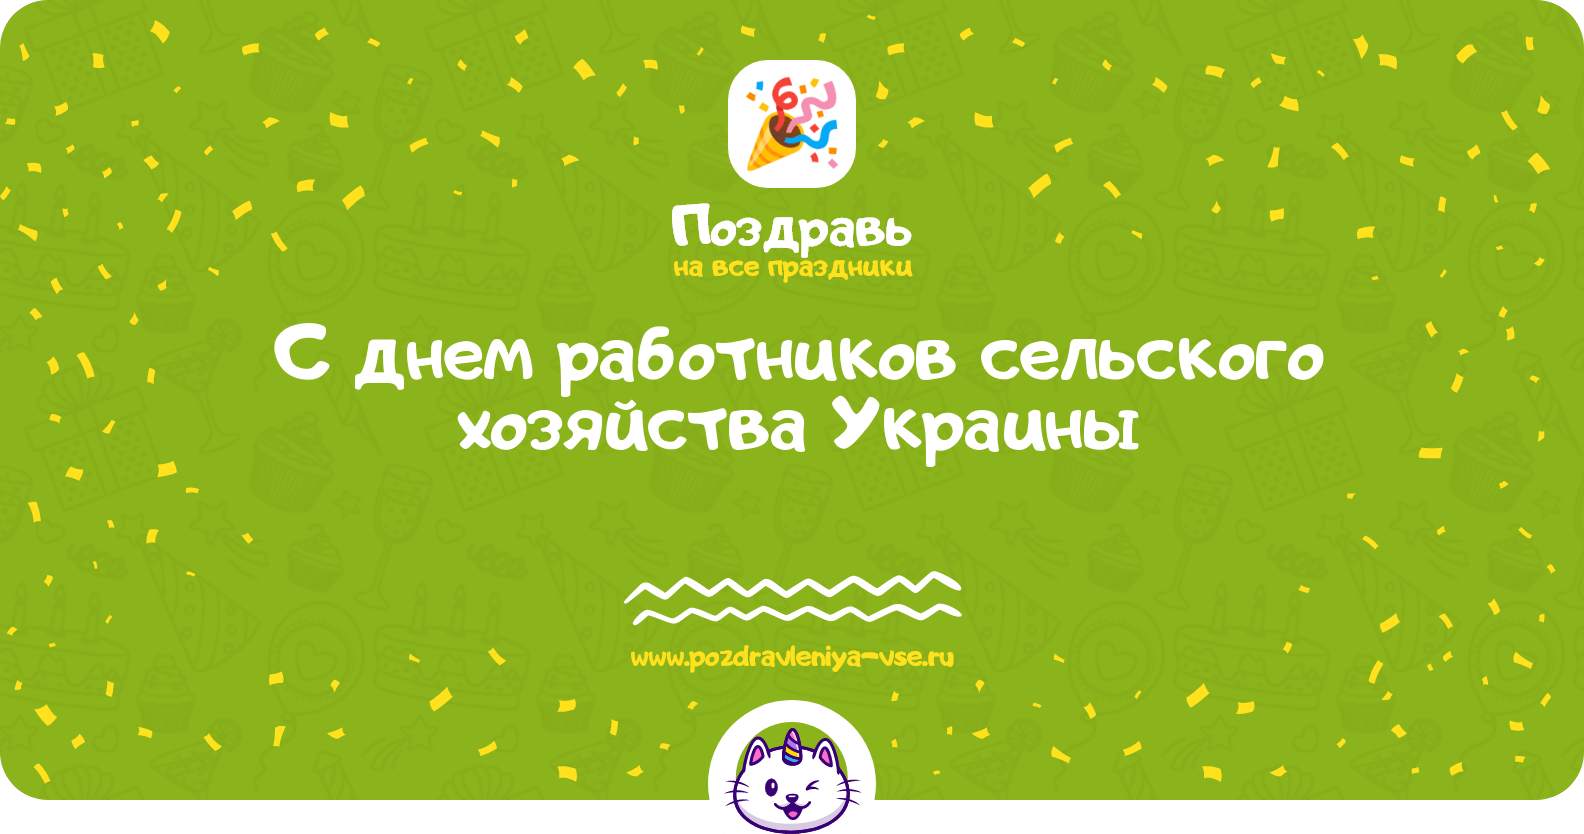 Поздравления с днем работников сельского хозяйства Украины